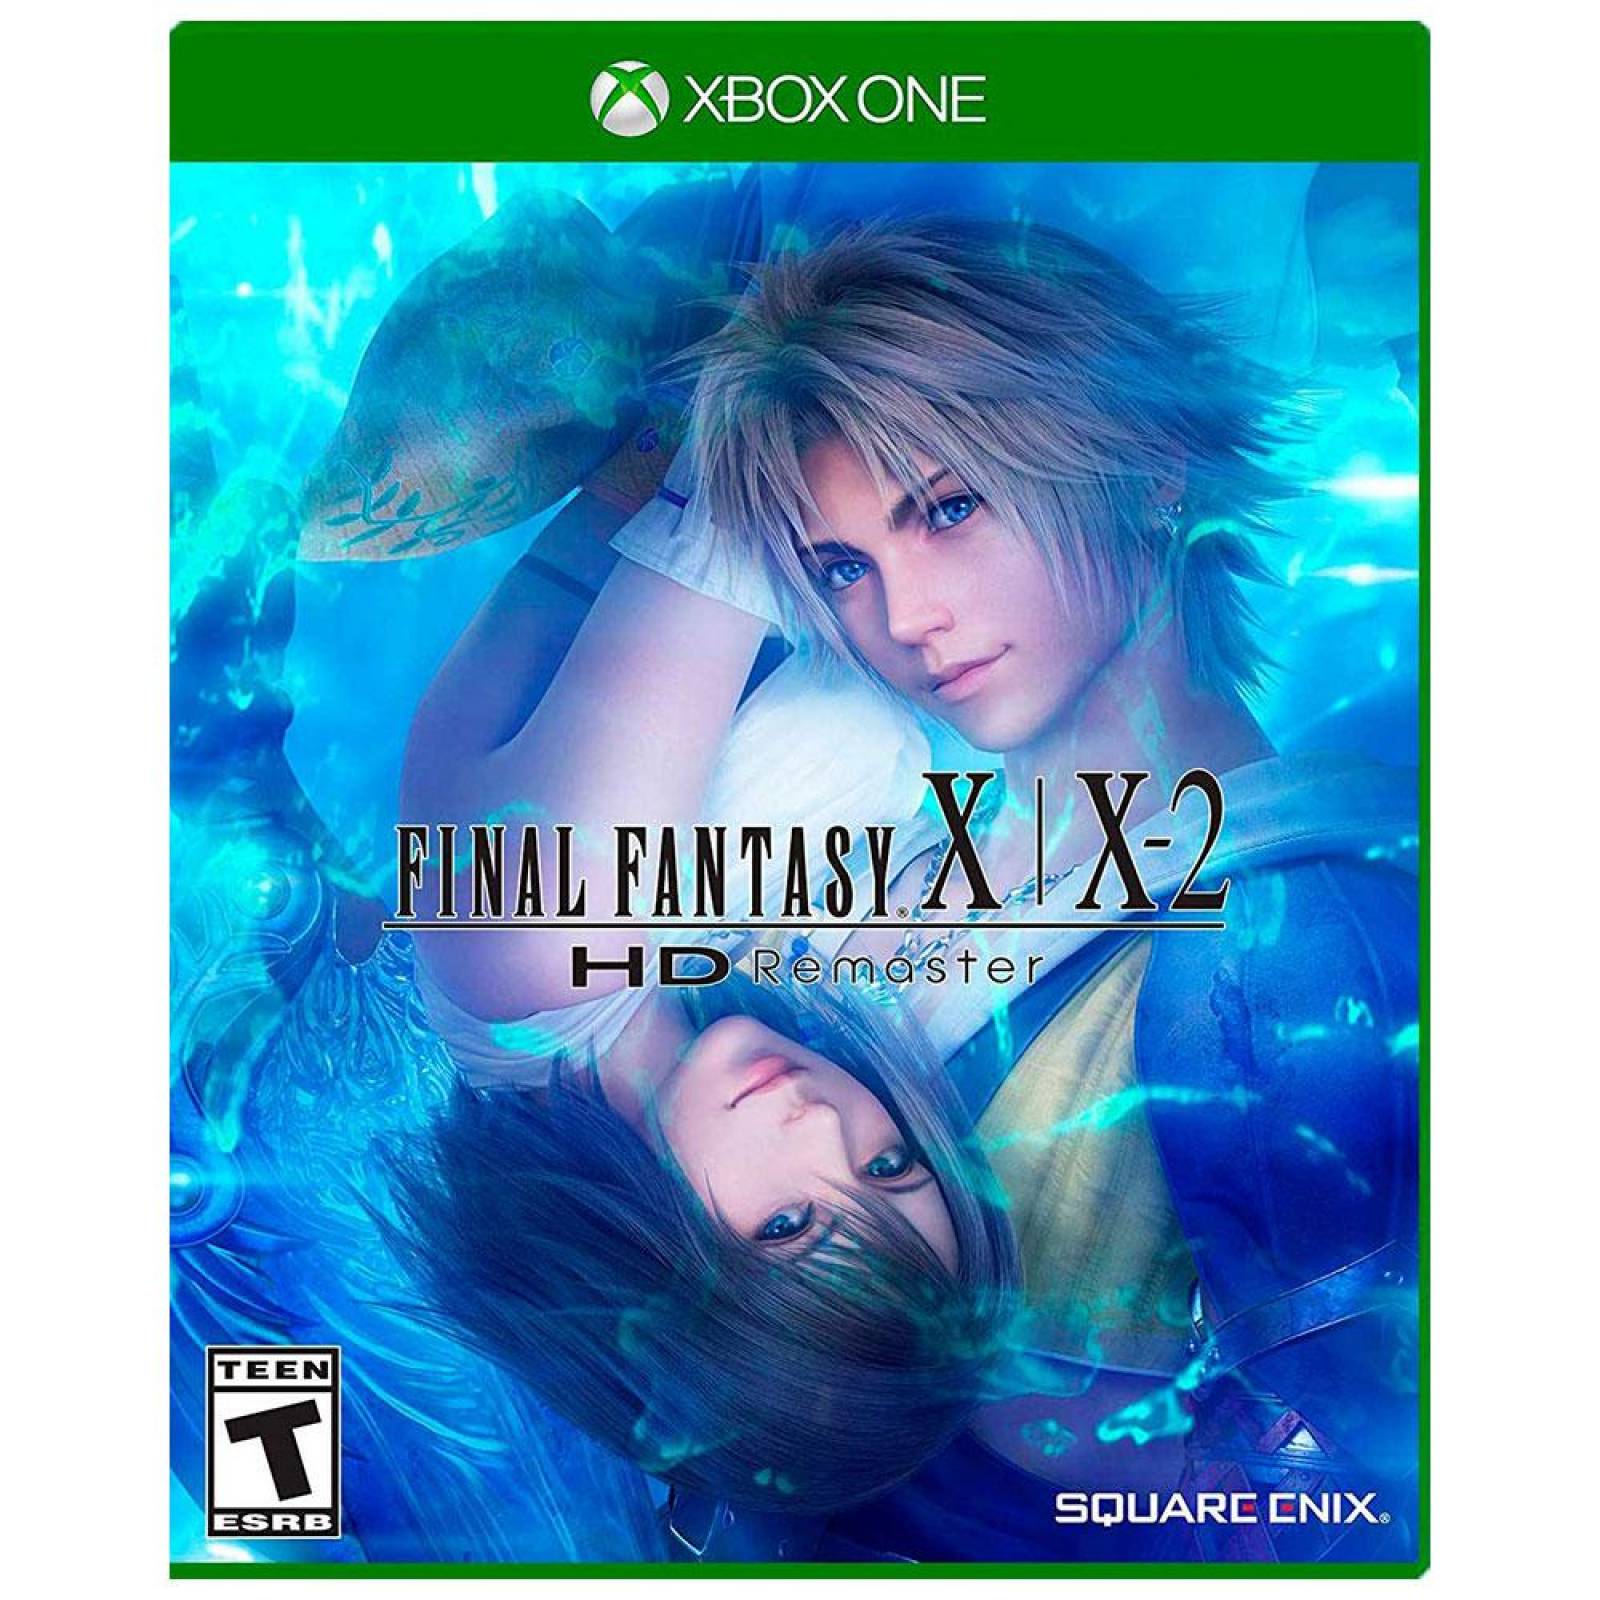 Final Fantasy X/X-2 Xbox One - S001 